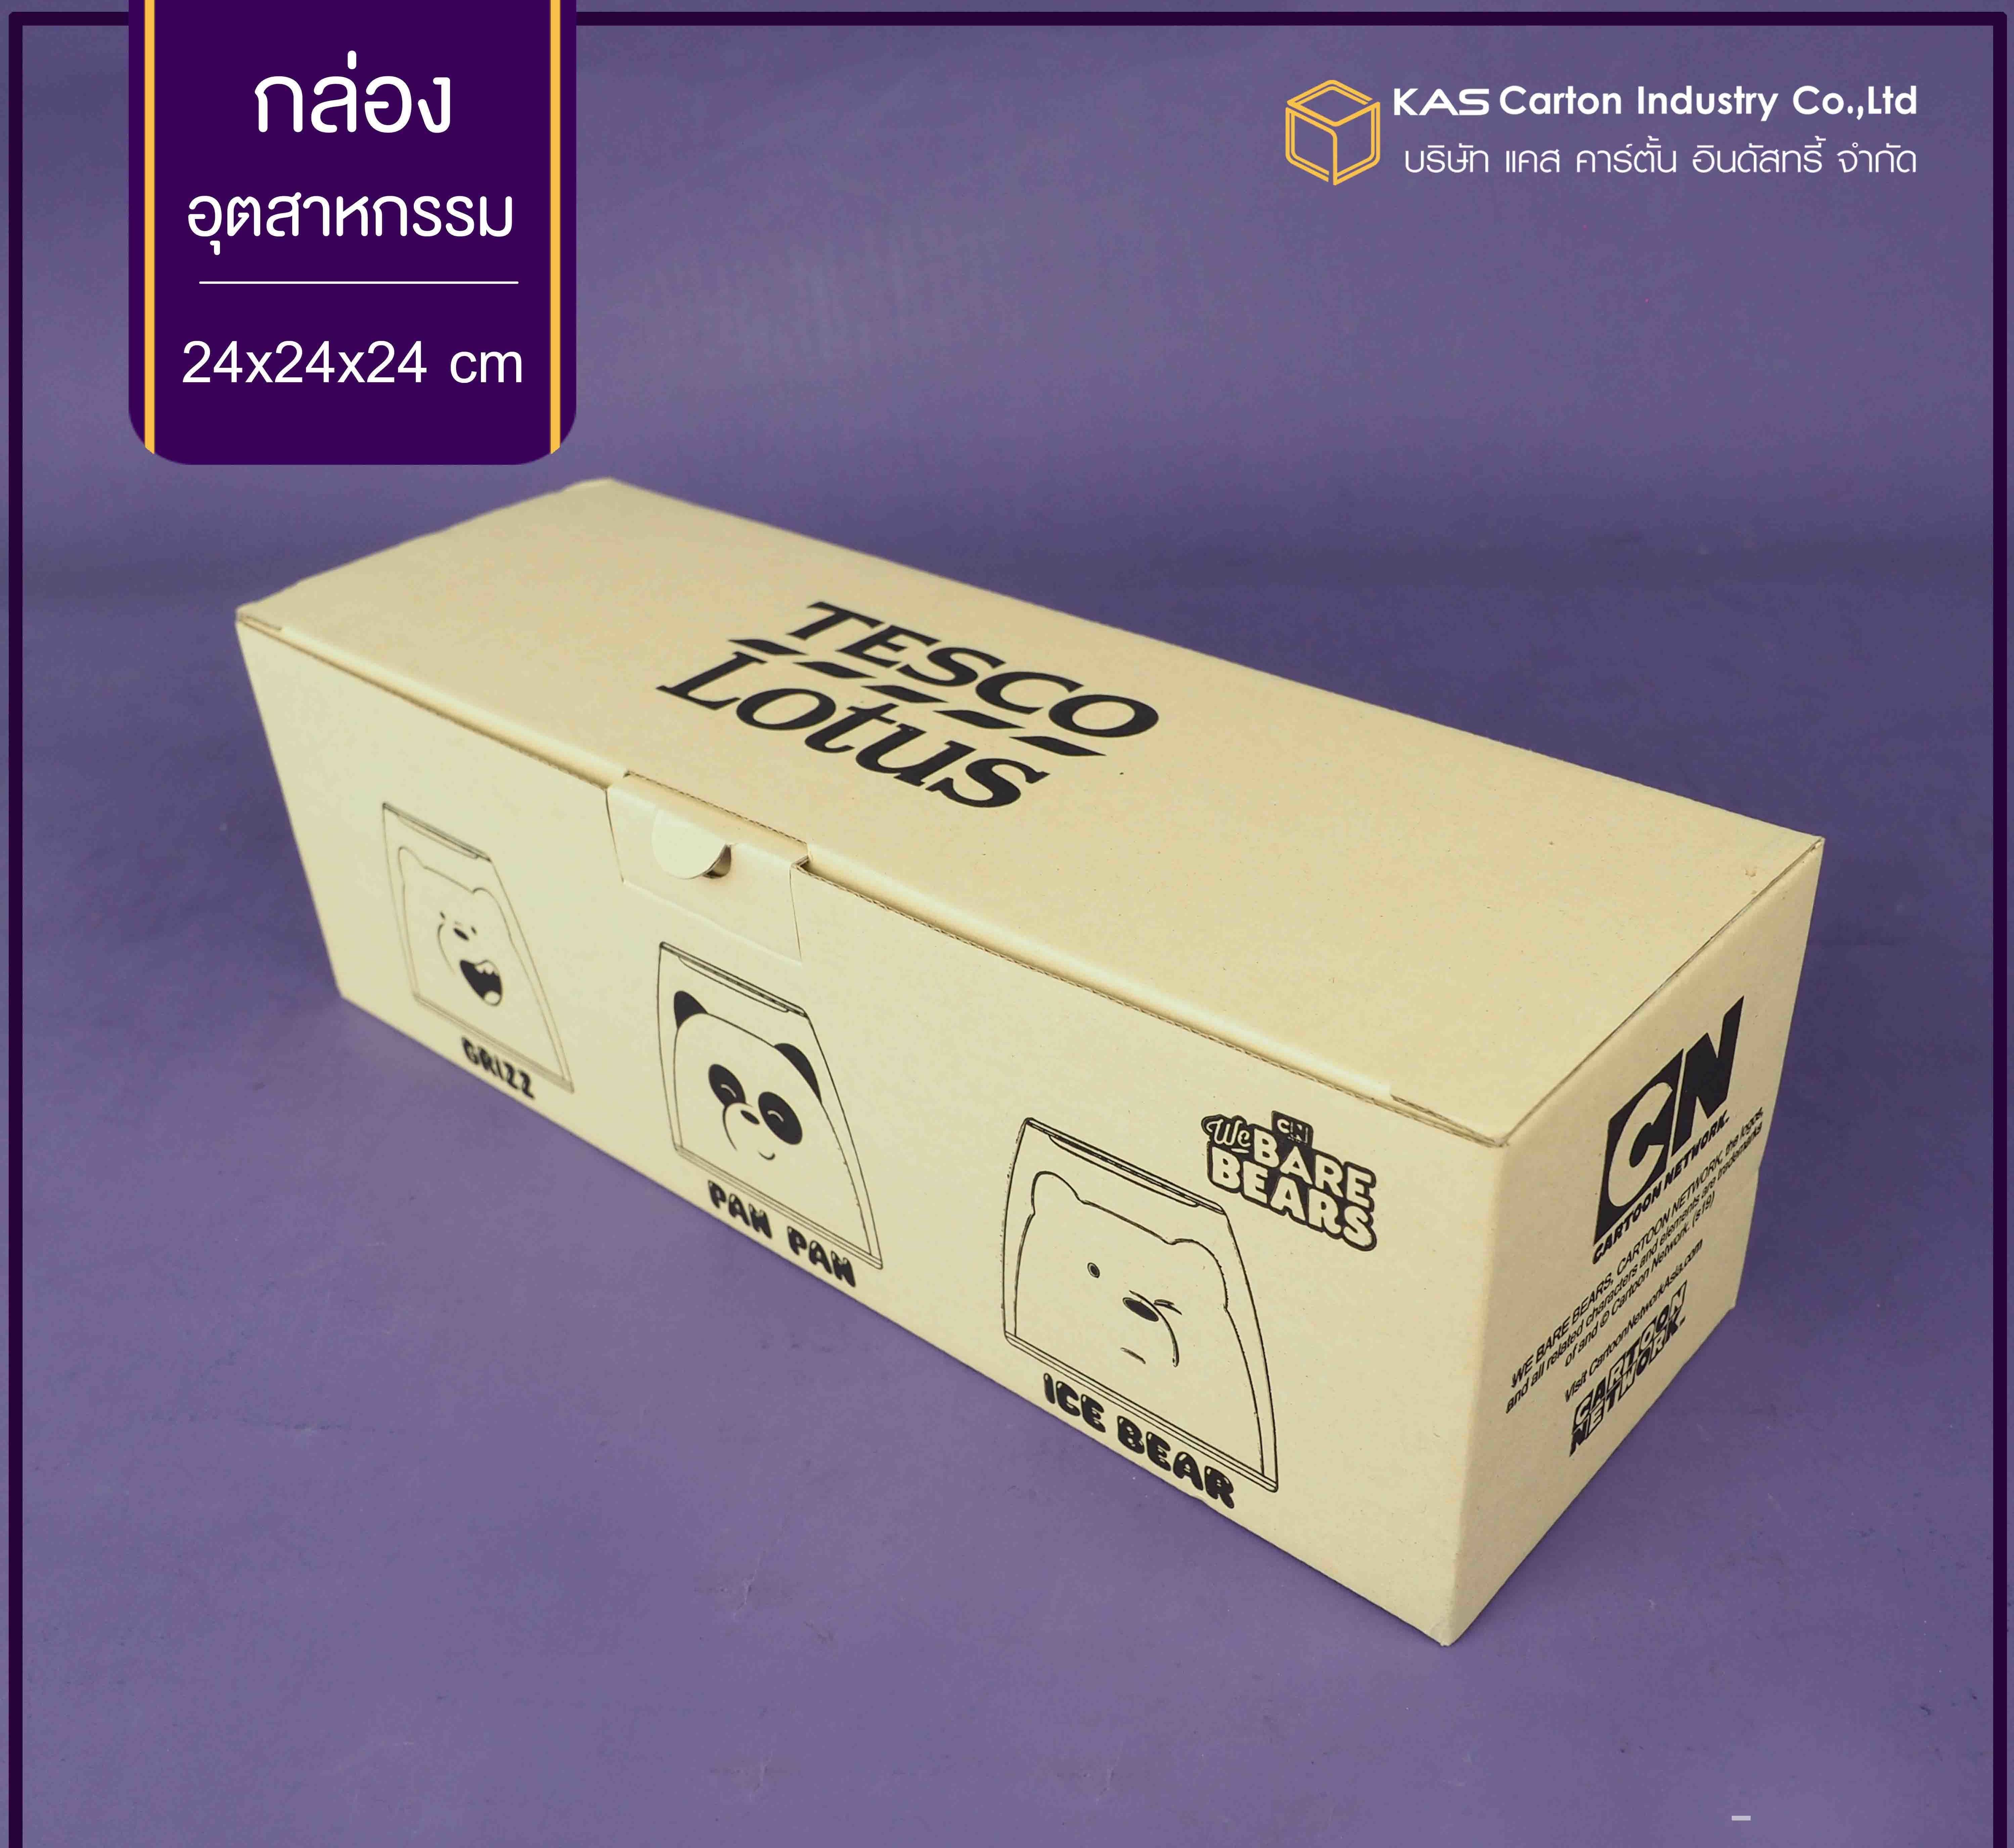 กล่องแก้วน้ำ Tesco Lotus
ขนาด 10.5x32.2x10.2 cm.
รูปแบบกล่อง ฝาเสียบก้นขัด
กล่องหนา 3 ชั้น ลอน E
สีกล่อง ด้านนอก125KI/ด้านใน125CA
พิมพ์ 1 สี 5 ด้าน
รหัสสินค้า 1997-09